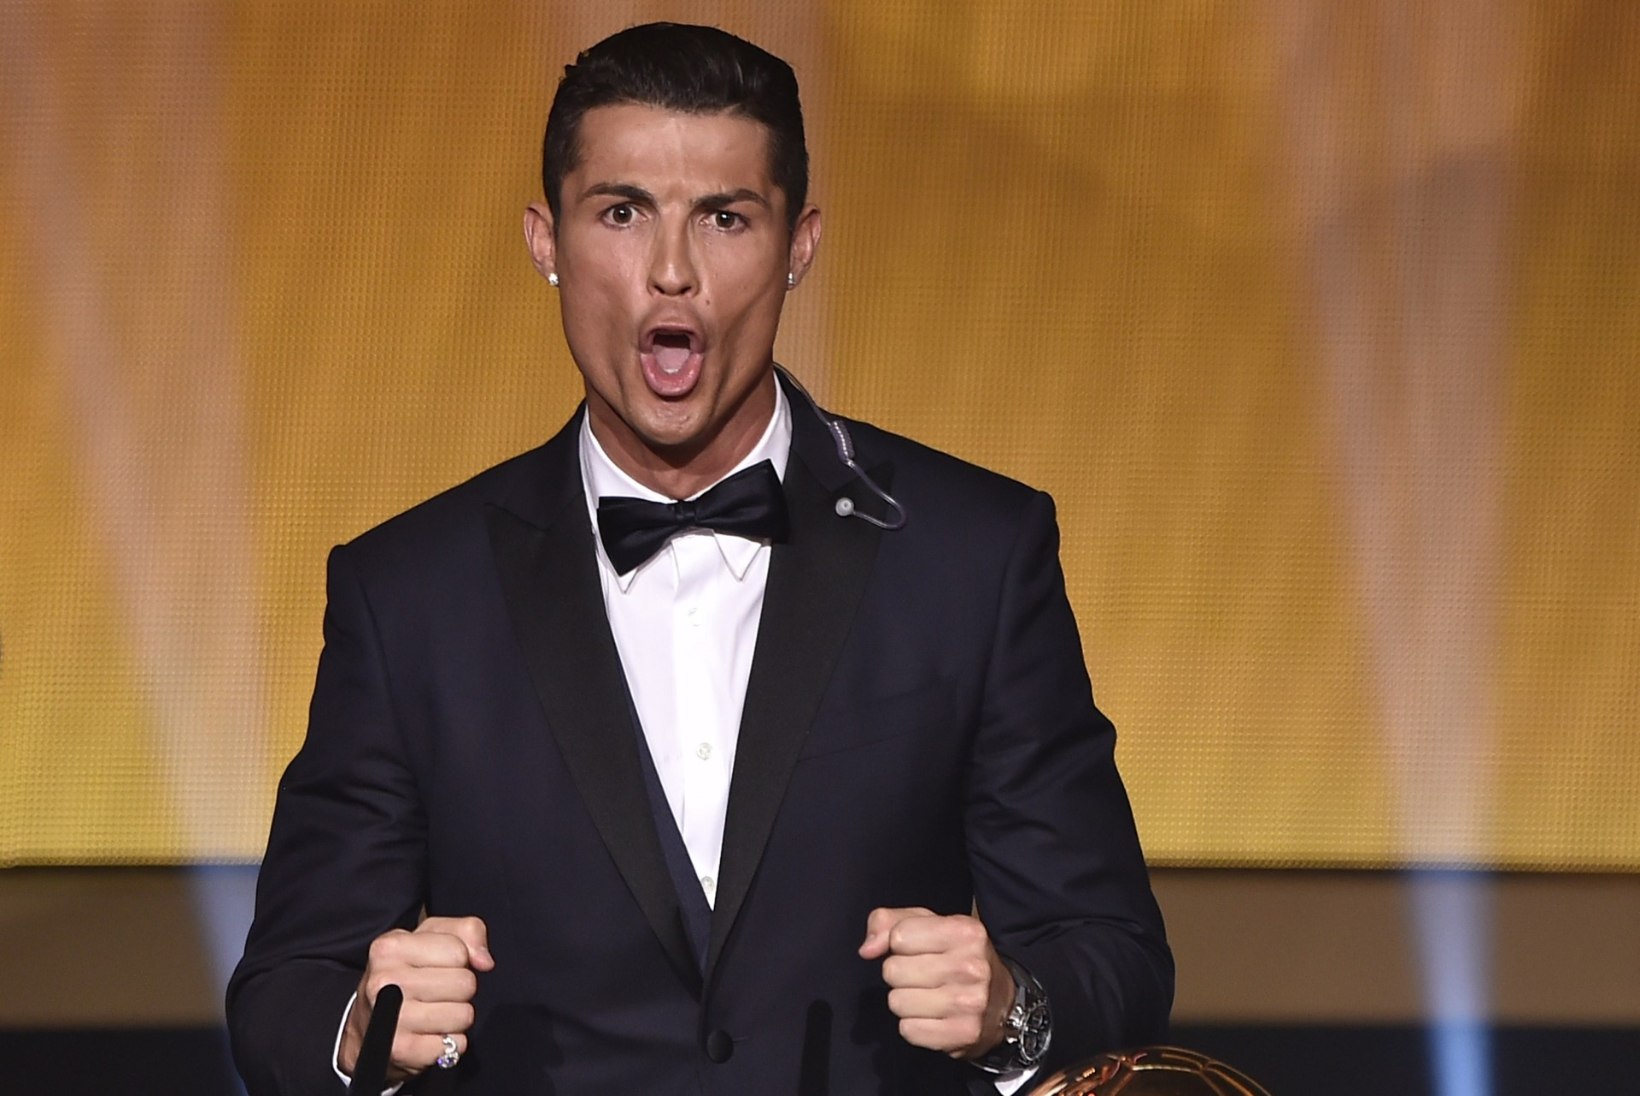 VIDEOD: pentsik võiduhüüd on teinud Ronaldo interneti naerualuseks